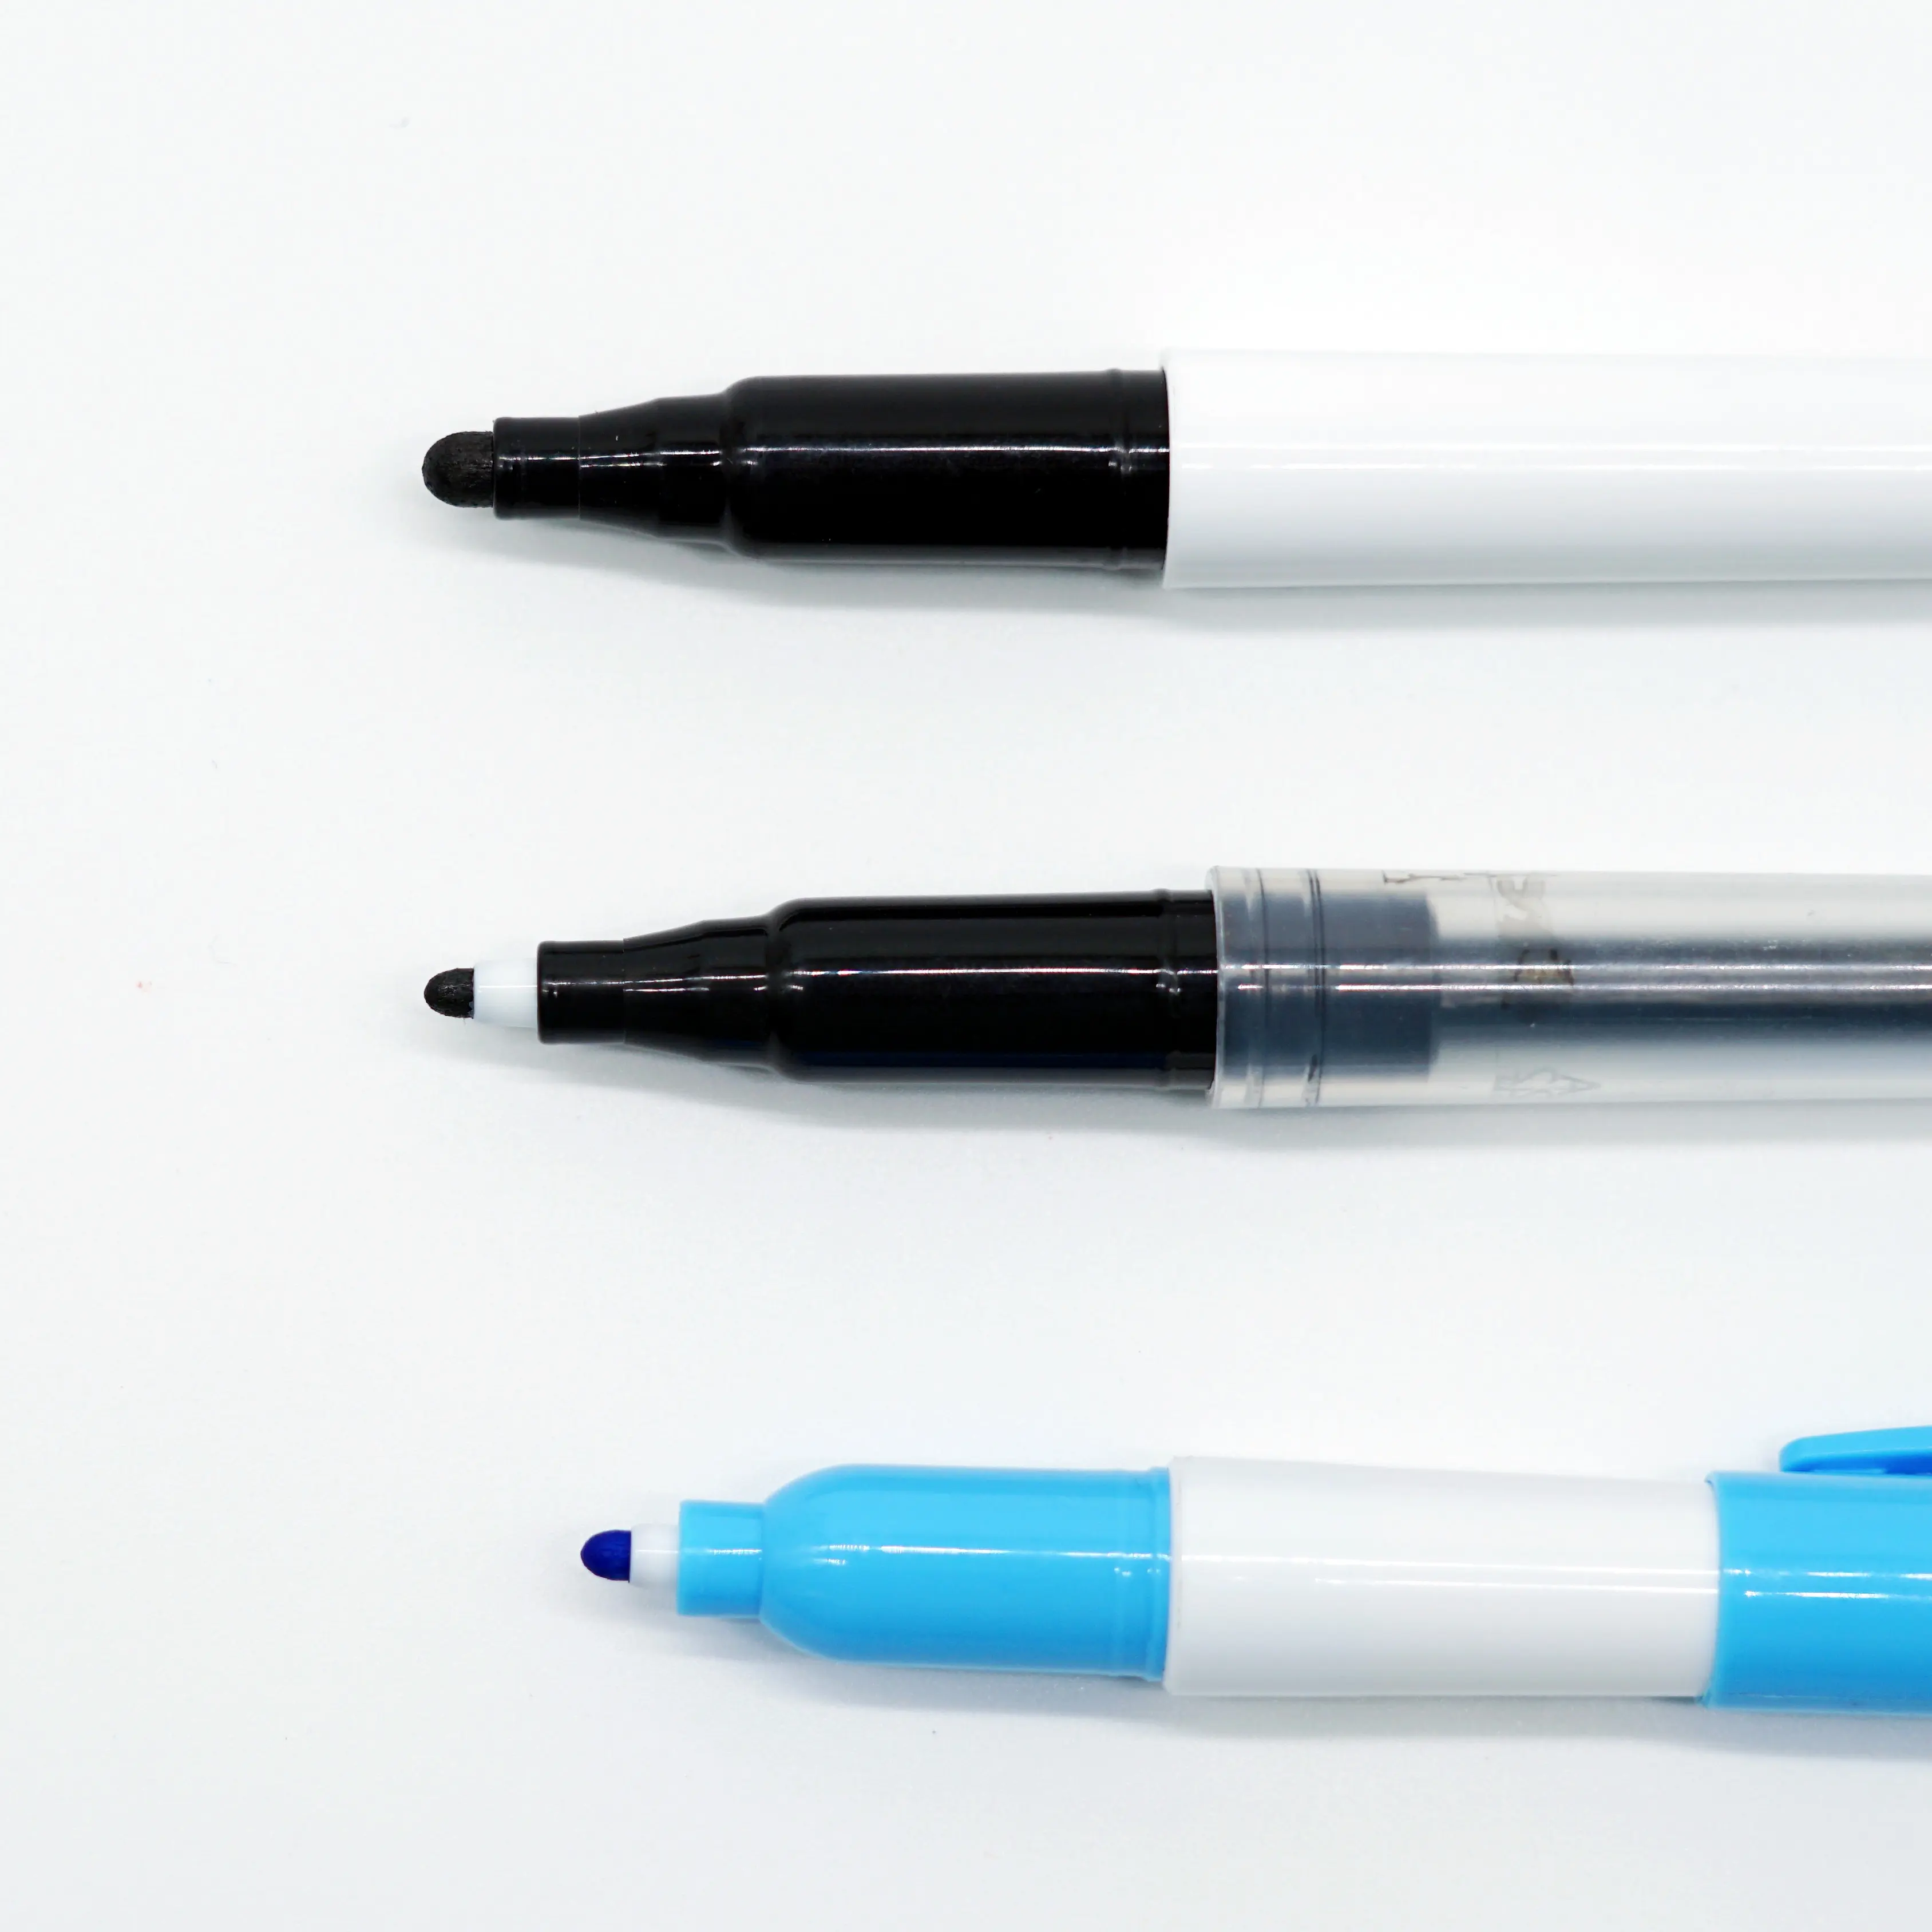 قلم تلوين مائي دون رمش سريع الجفاف يمكن استخدامه للرسم على خطوط بسمك مختلف للأطفال والبالغين